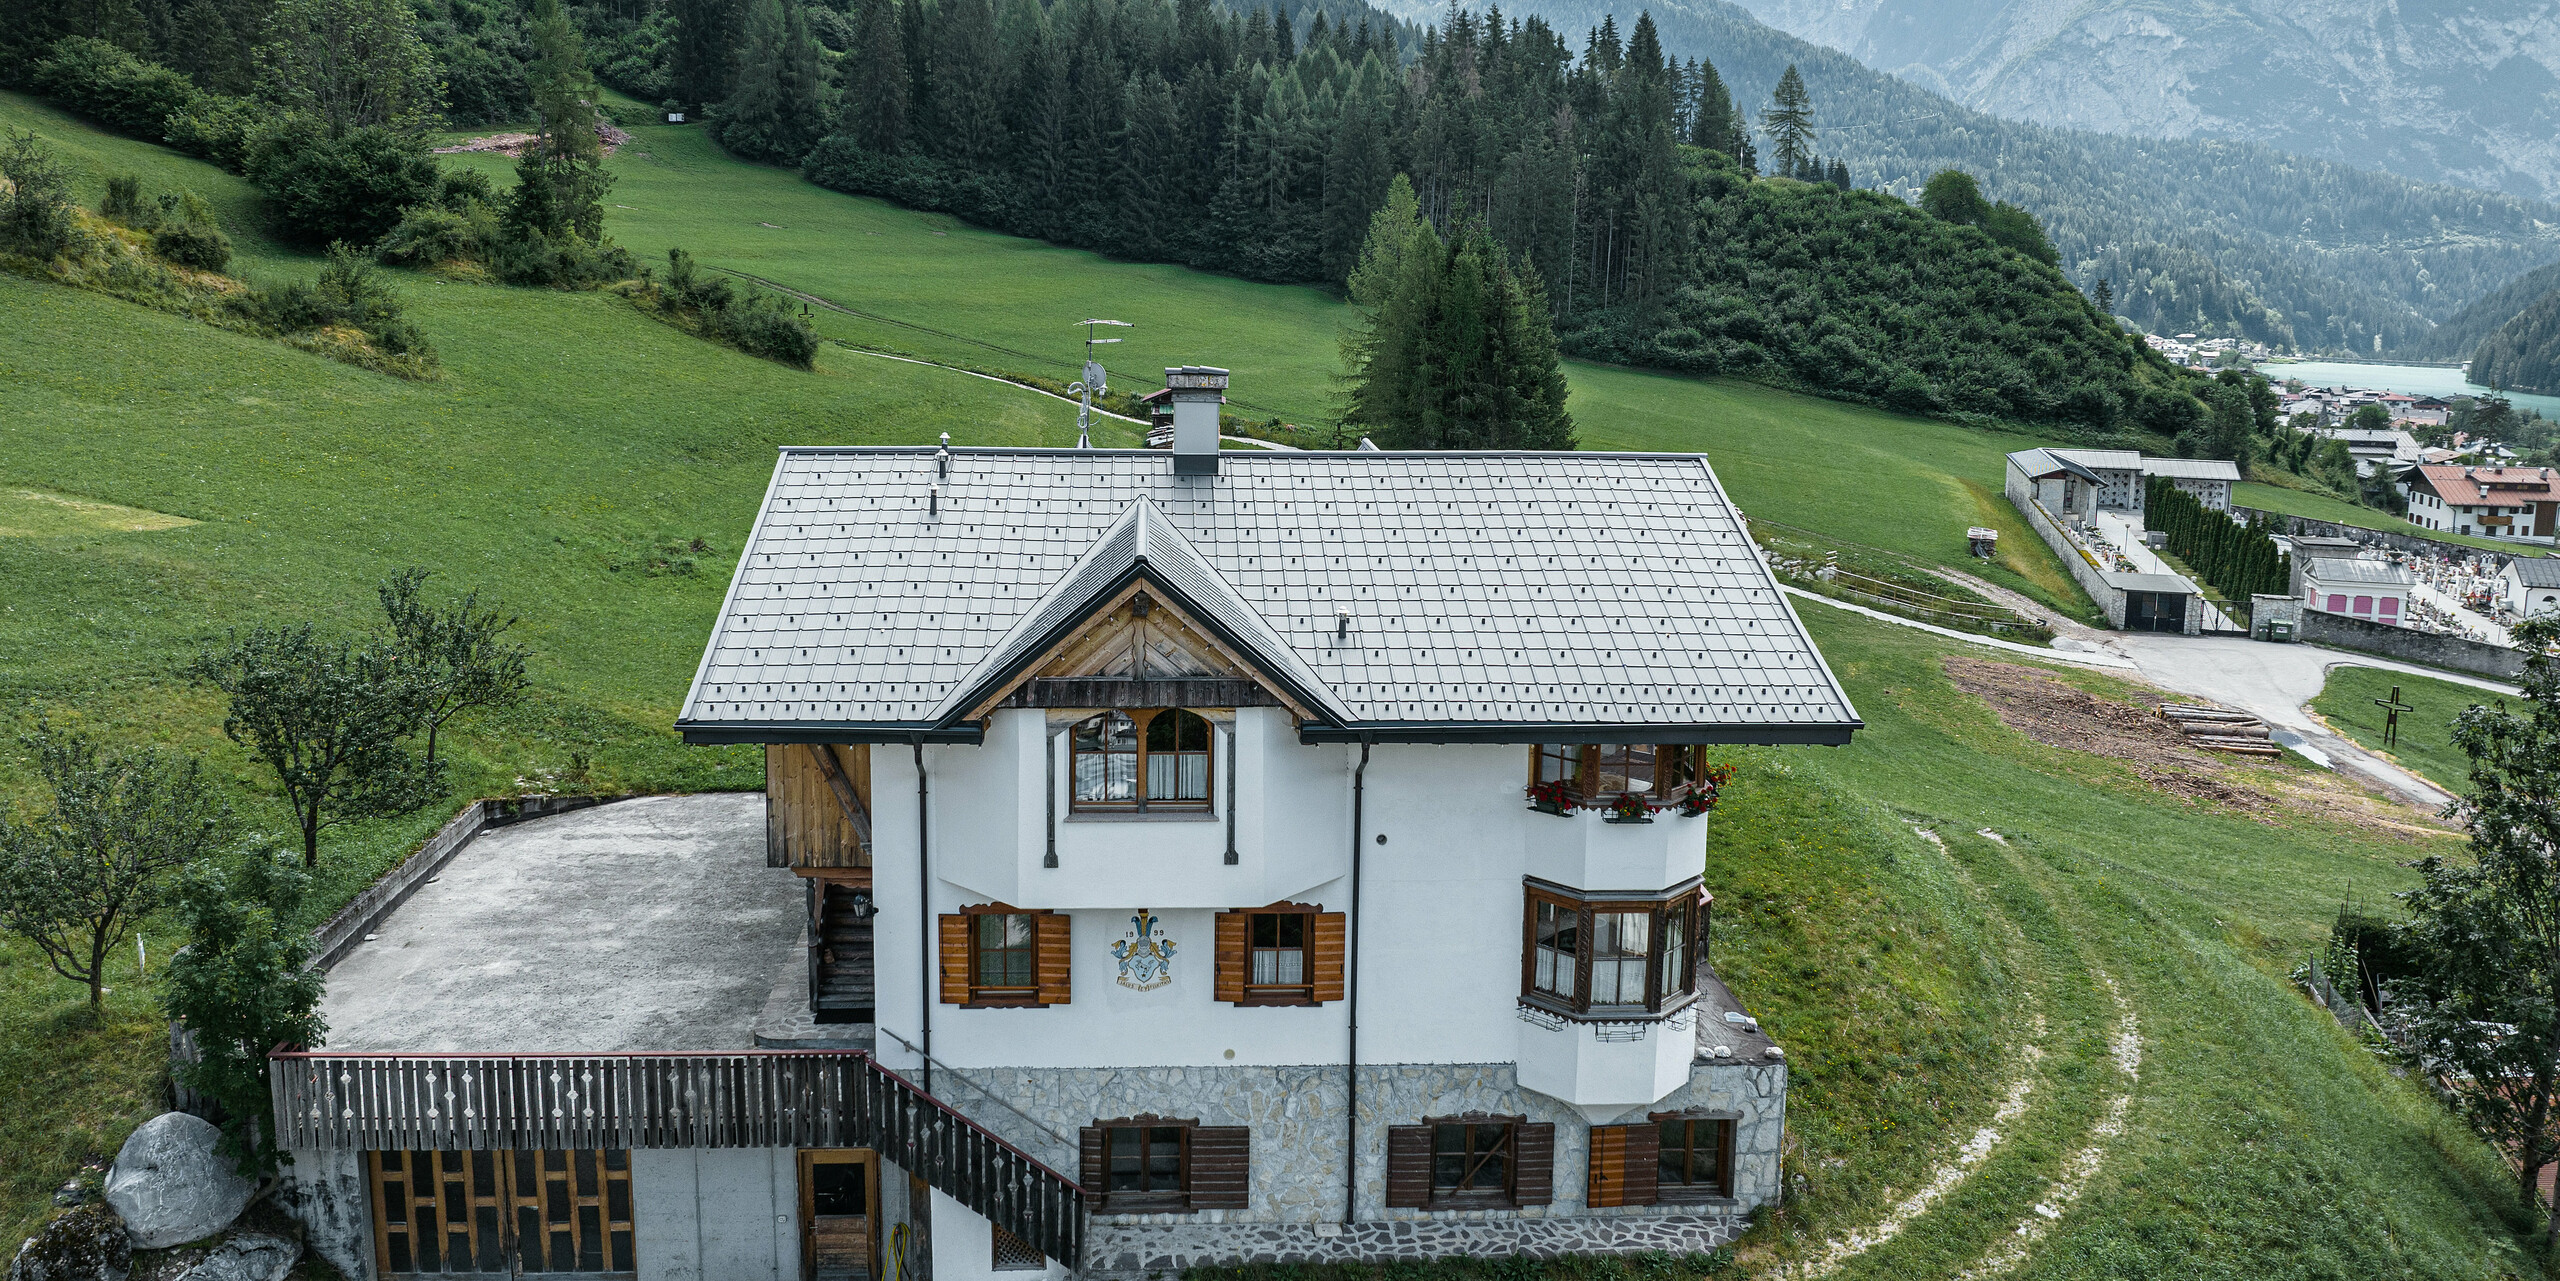 Pohled z ptačí perspektivy na vchod do tradiční horské chaty v Auronzo di Cadore po rekonstrukci střechy, vyznačující se falcovanými taškami PREFA v barvě P.10 světle šedé. Budova s ​​charakteristickým alpským šarmem a moderní střechou je v harmonii se svěží zelenou krajinou a působivým horským panoramatem v pozadí a demonstruje úspěšnou kombinaci funkčnosti a regionální architektury.